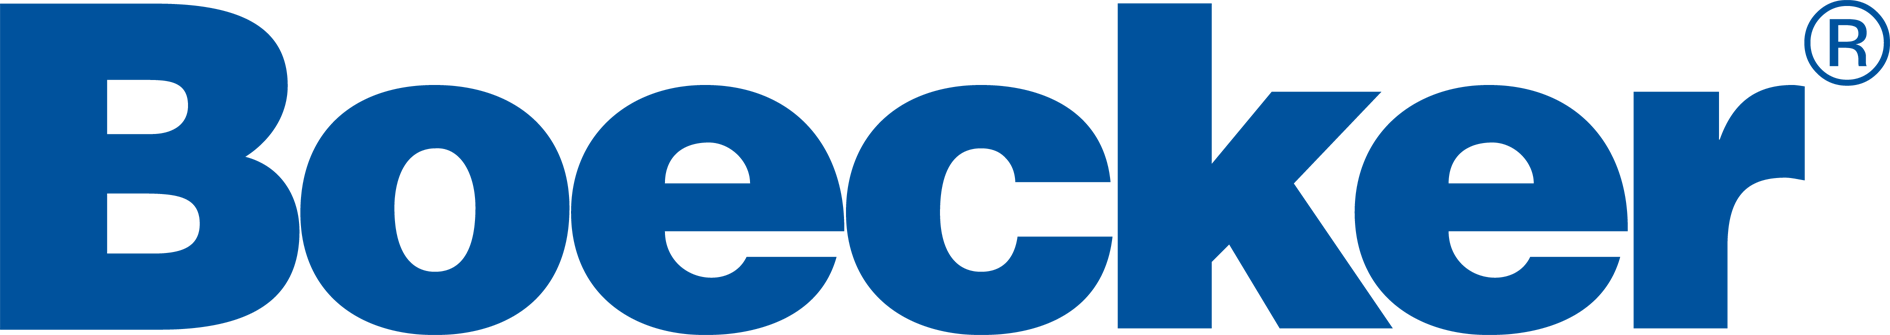 Boecker Logo